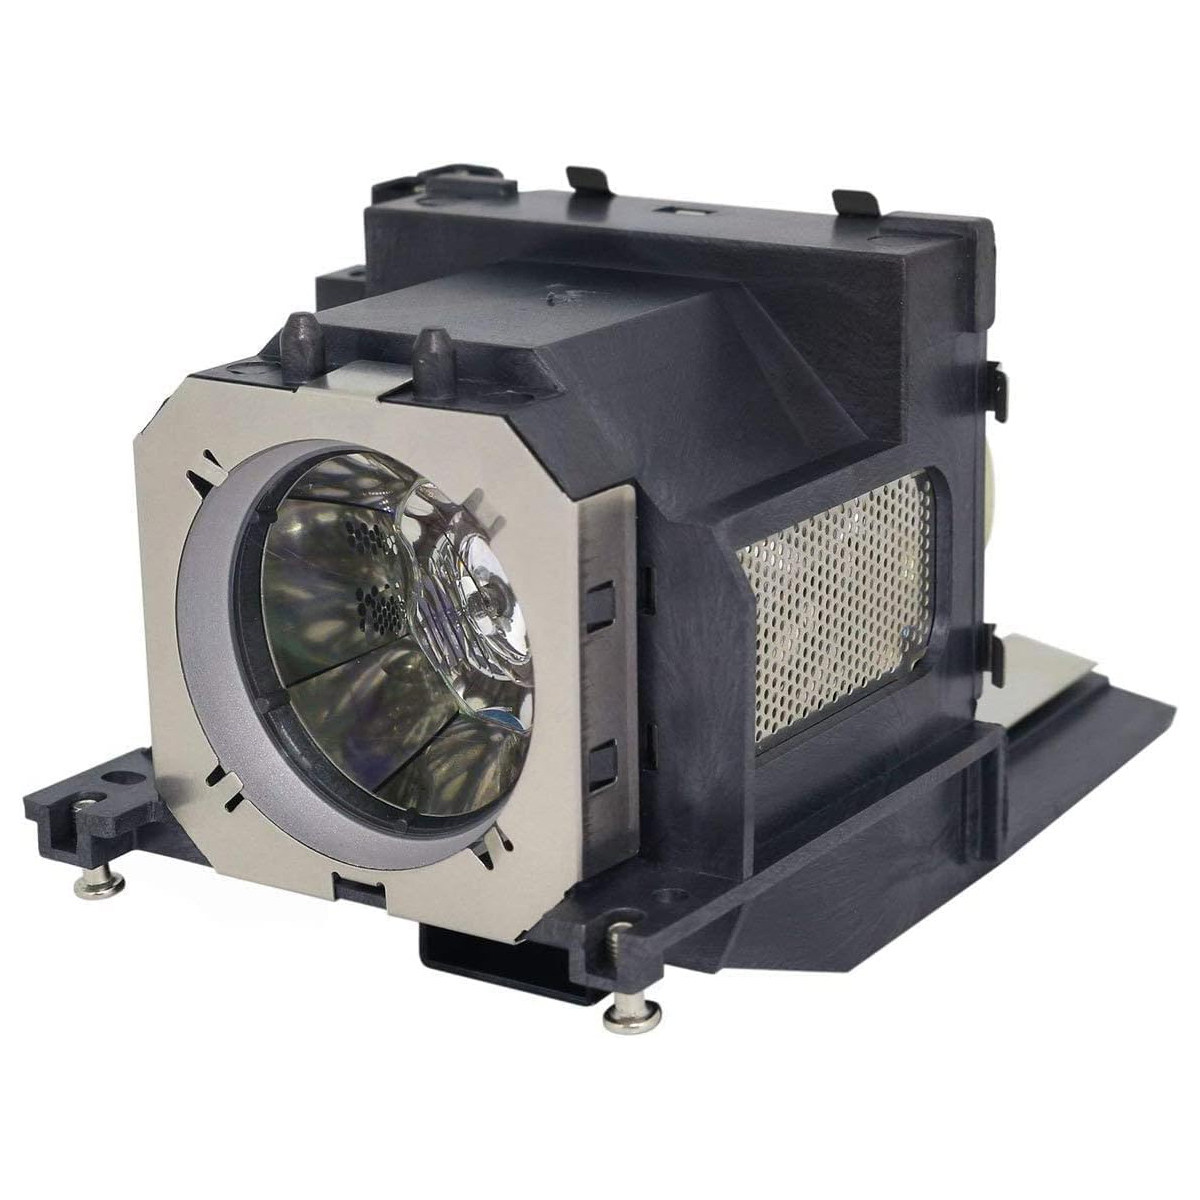 Replacement projector lamp ET-LAV200 For PANASONIC PT-VW430 PT-VW440 PT-VX500